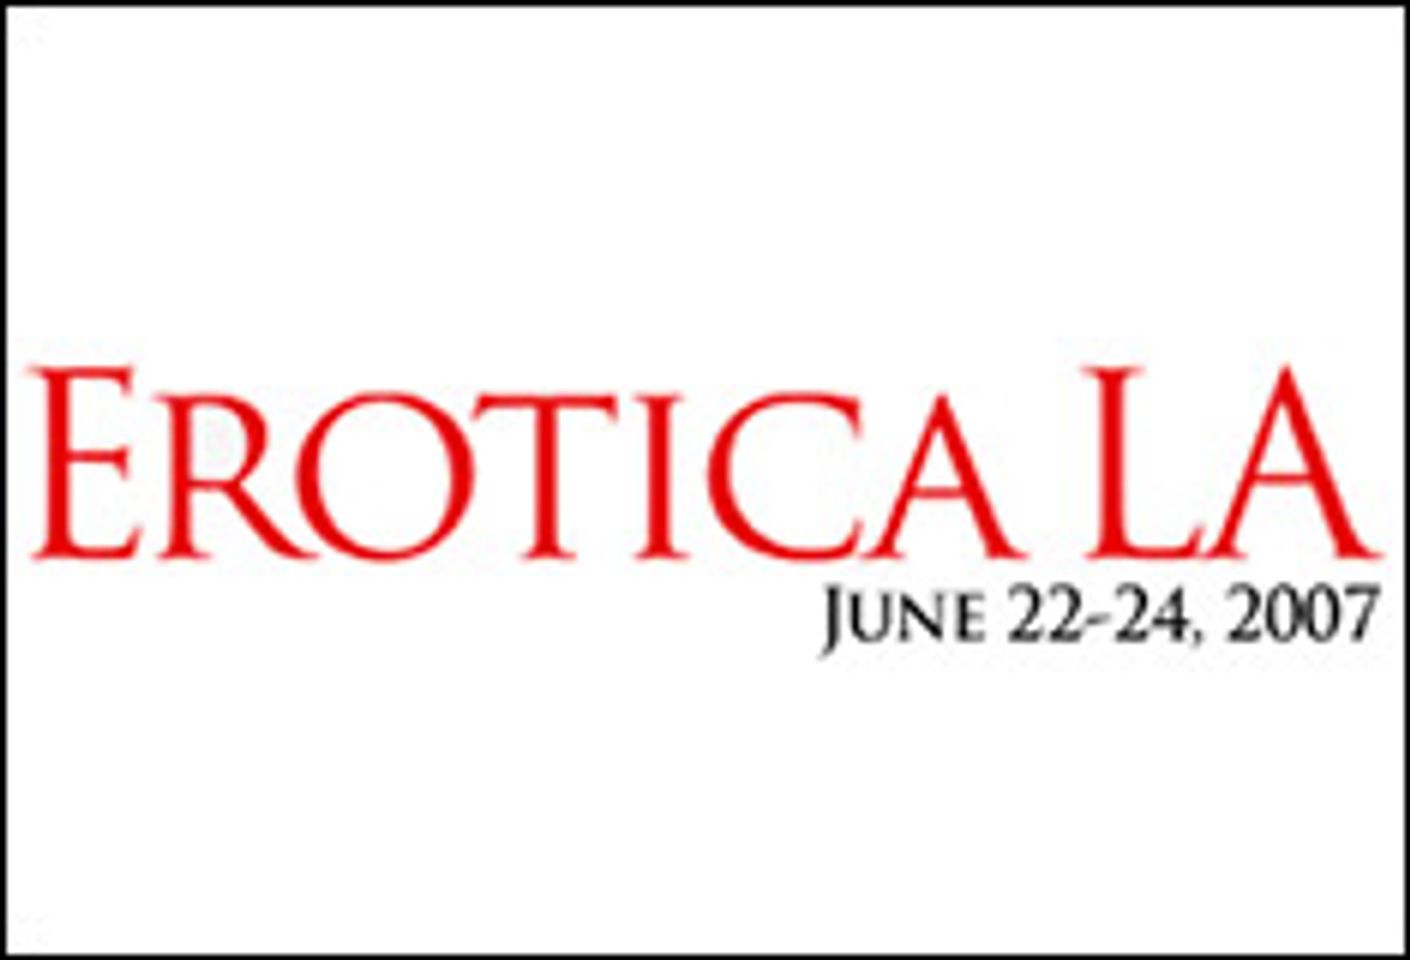 Erotica LA 2007 Introduces Erotica Bucks